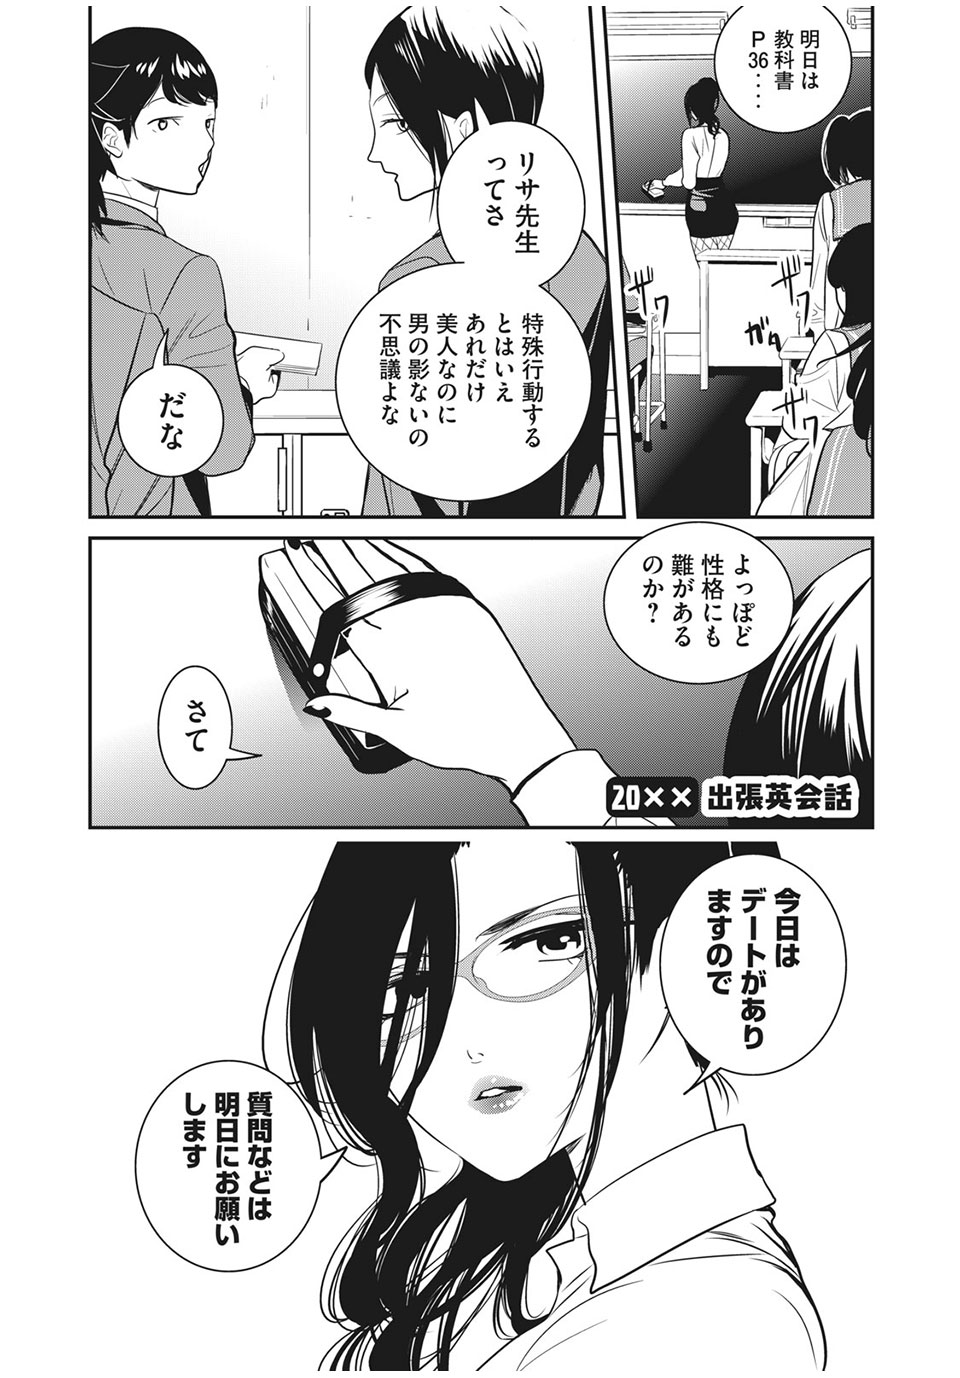 Eigo ×× Sensei - Chapter 20 - Page 2